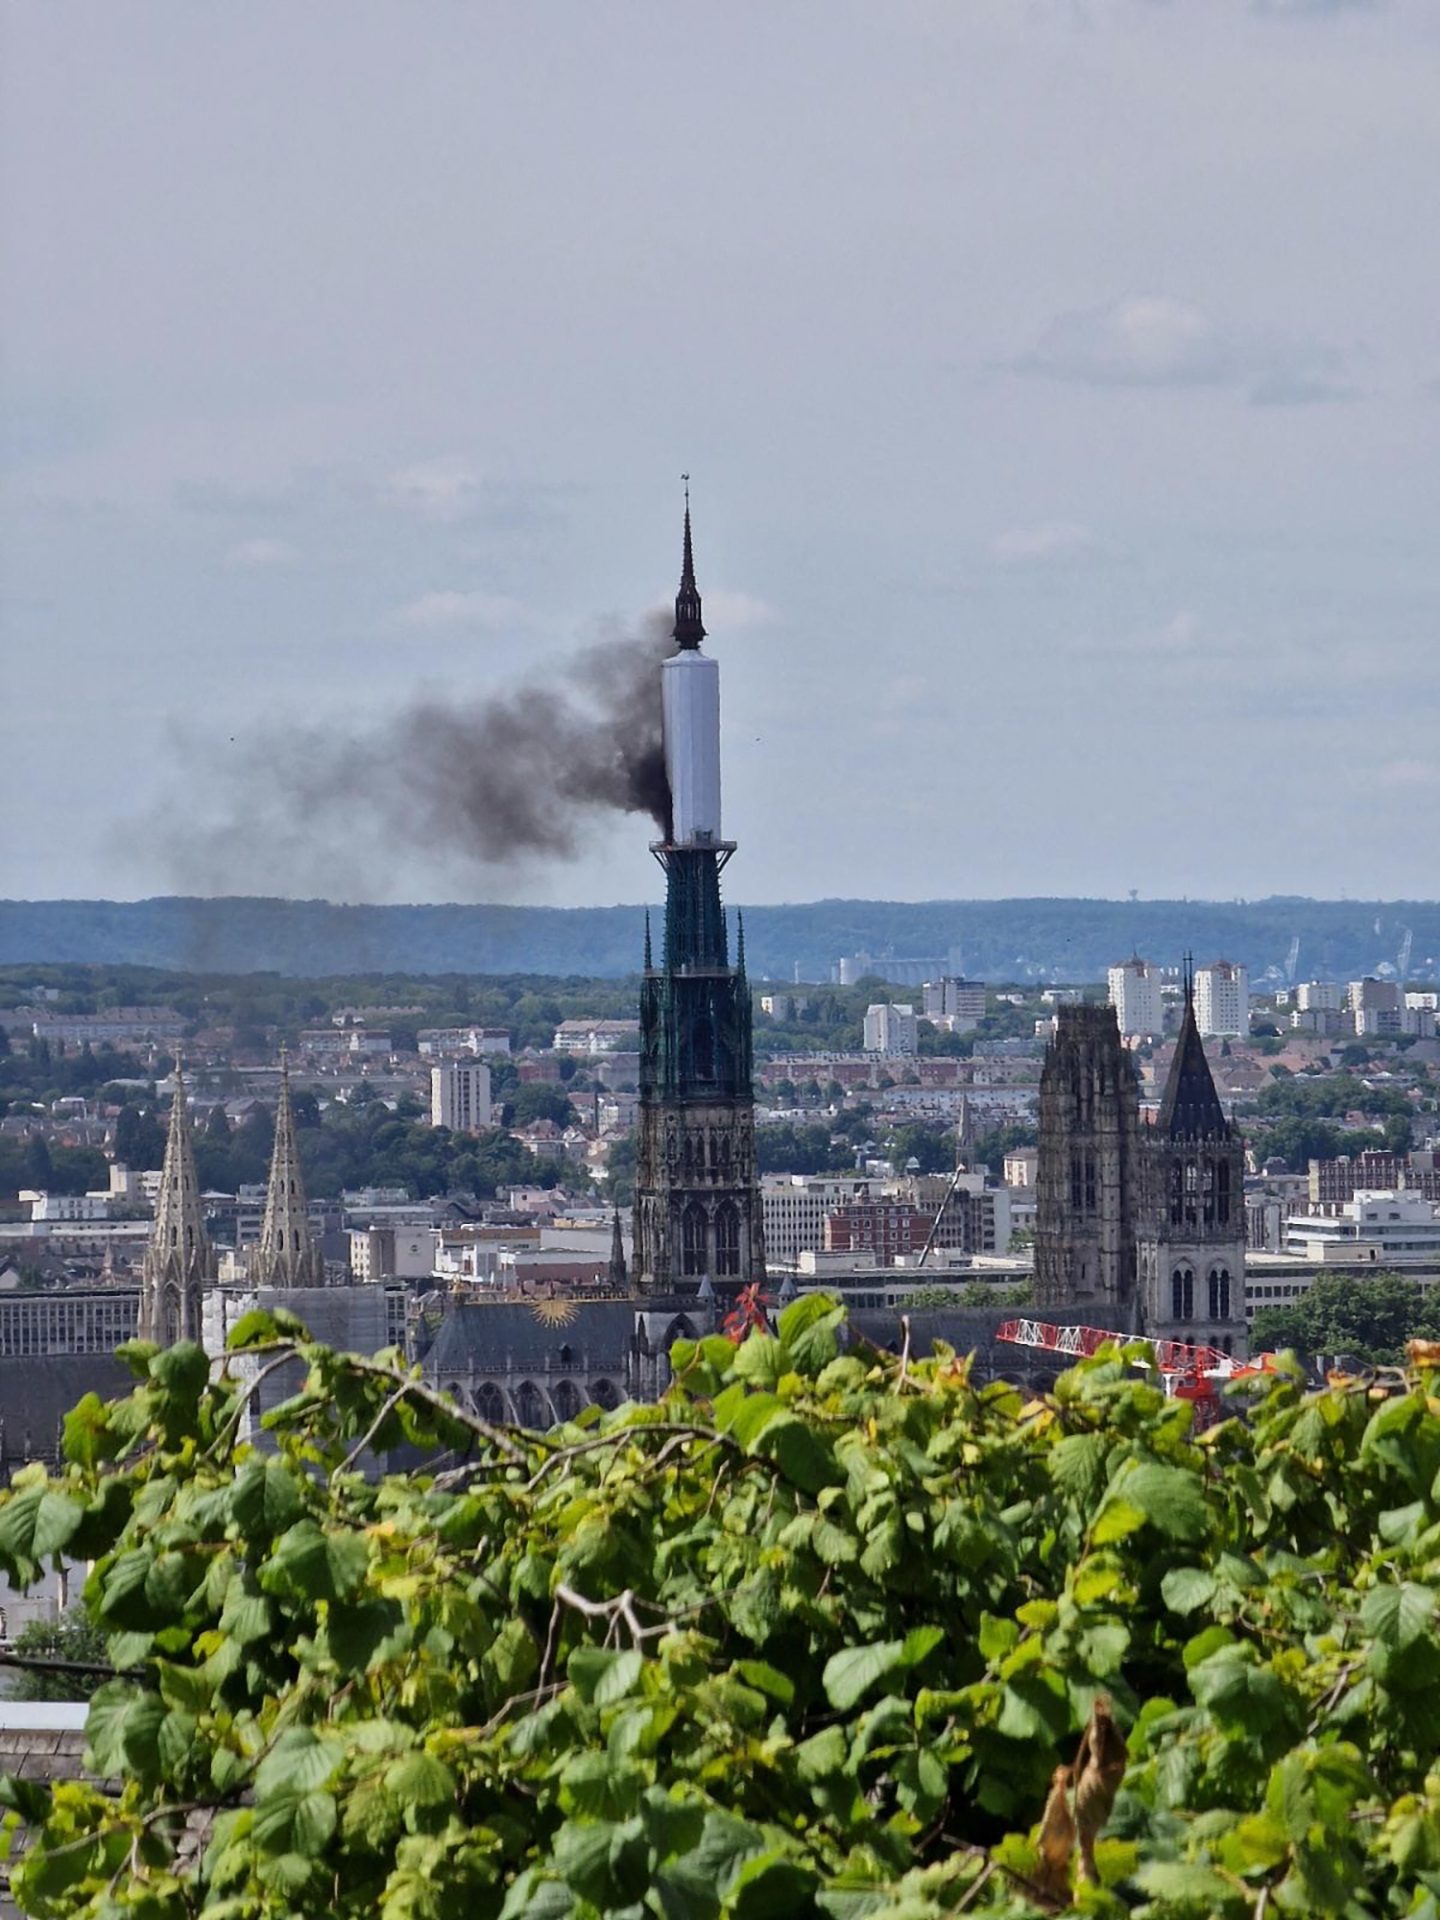 Incêndio na torre da catedral de Rouen em França